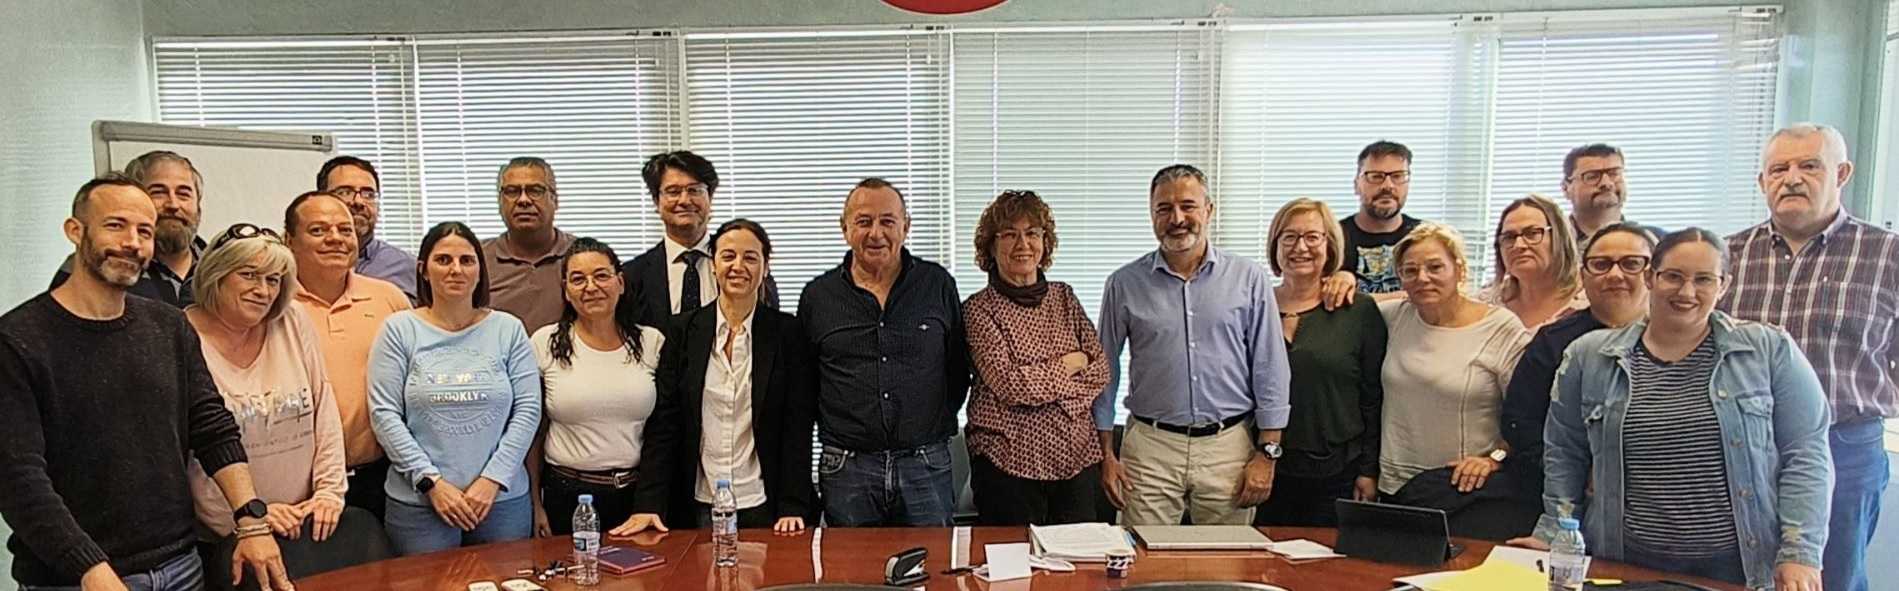 Proexport y sindicatos inician las negociaciones del convenio colectivo del manipulado y envasado del tomate fresco de la Región de Murcia